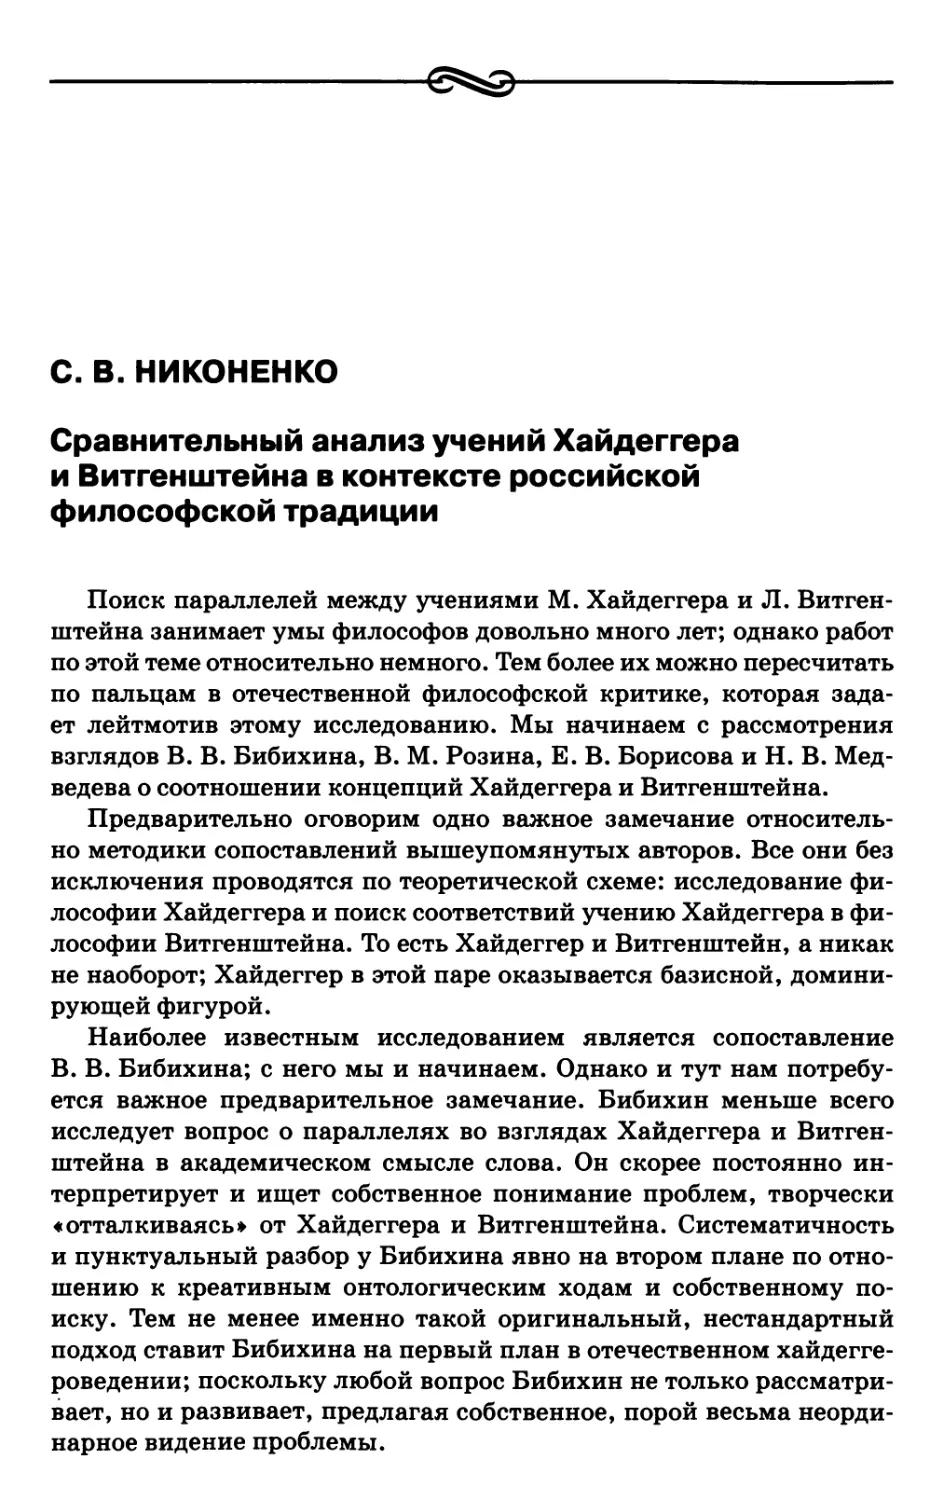 Никоненко С.В. Сравнительный анализ учений Хайдеггера и Витгенштейна в контексте российской философской традиции